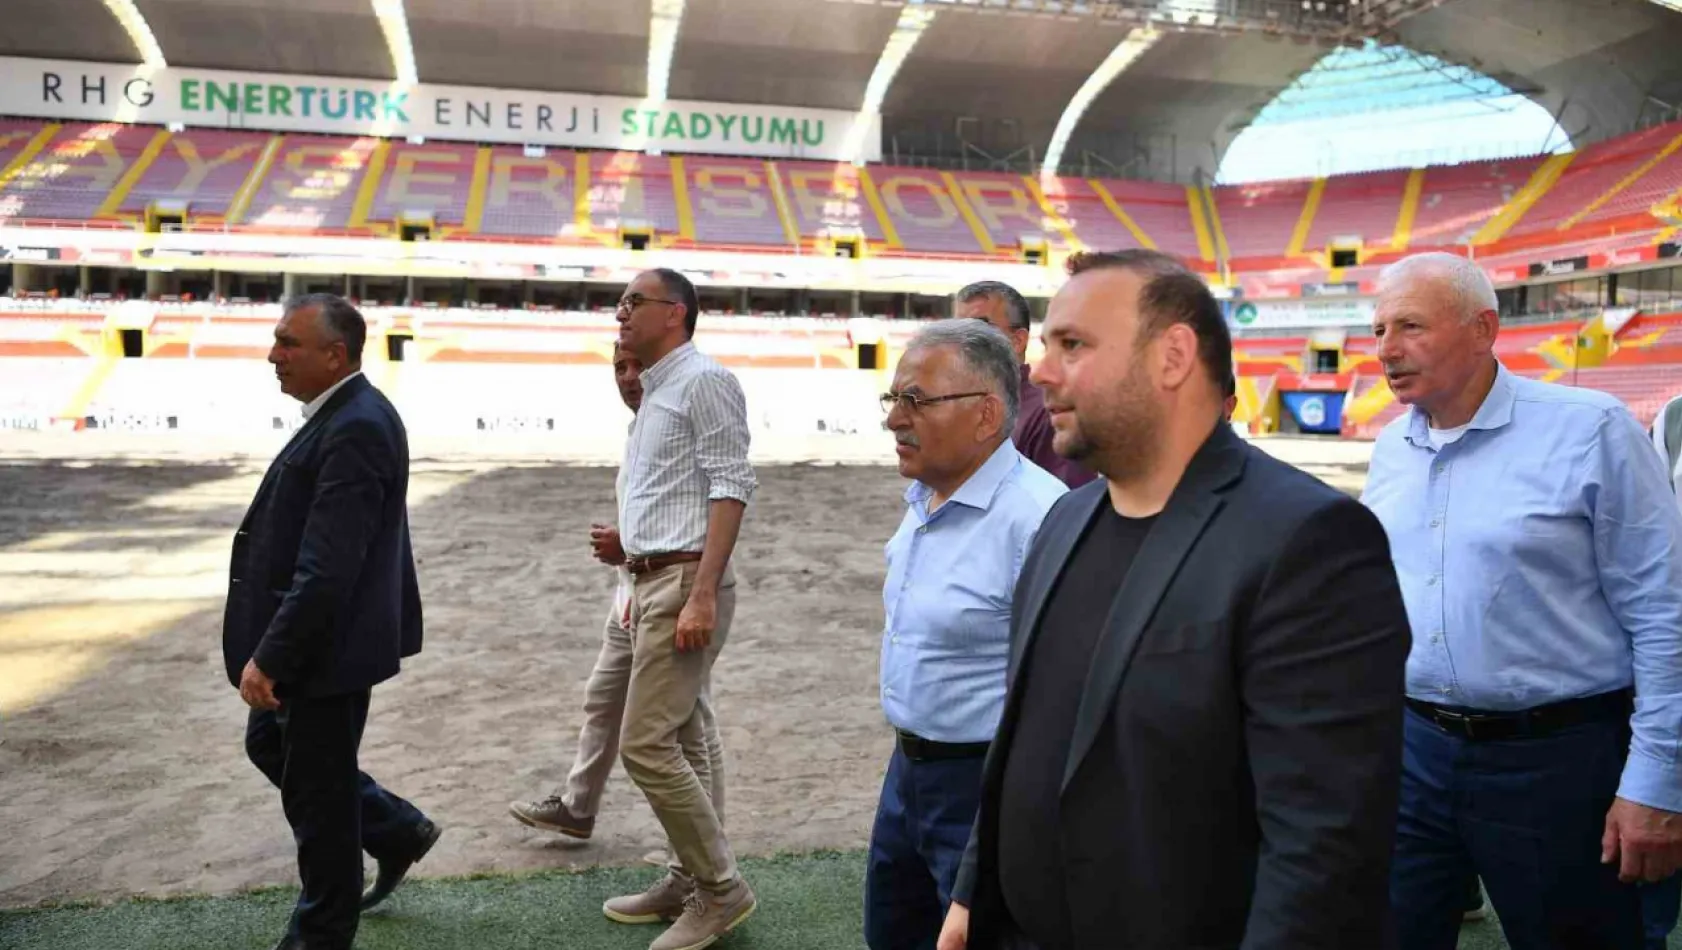 Başkan Büyükkılıç'tan stadyum incelemesi